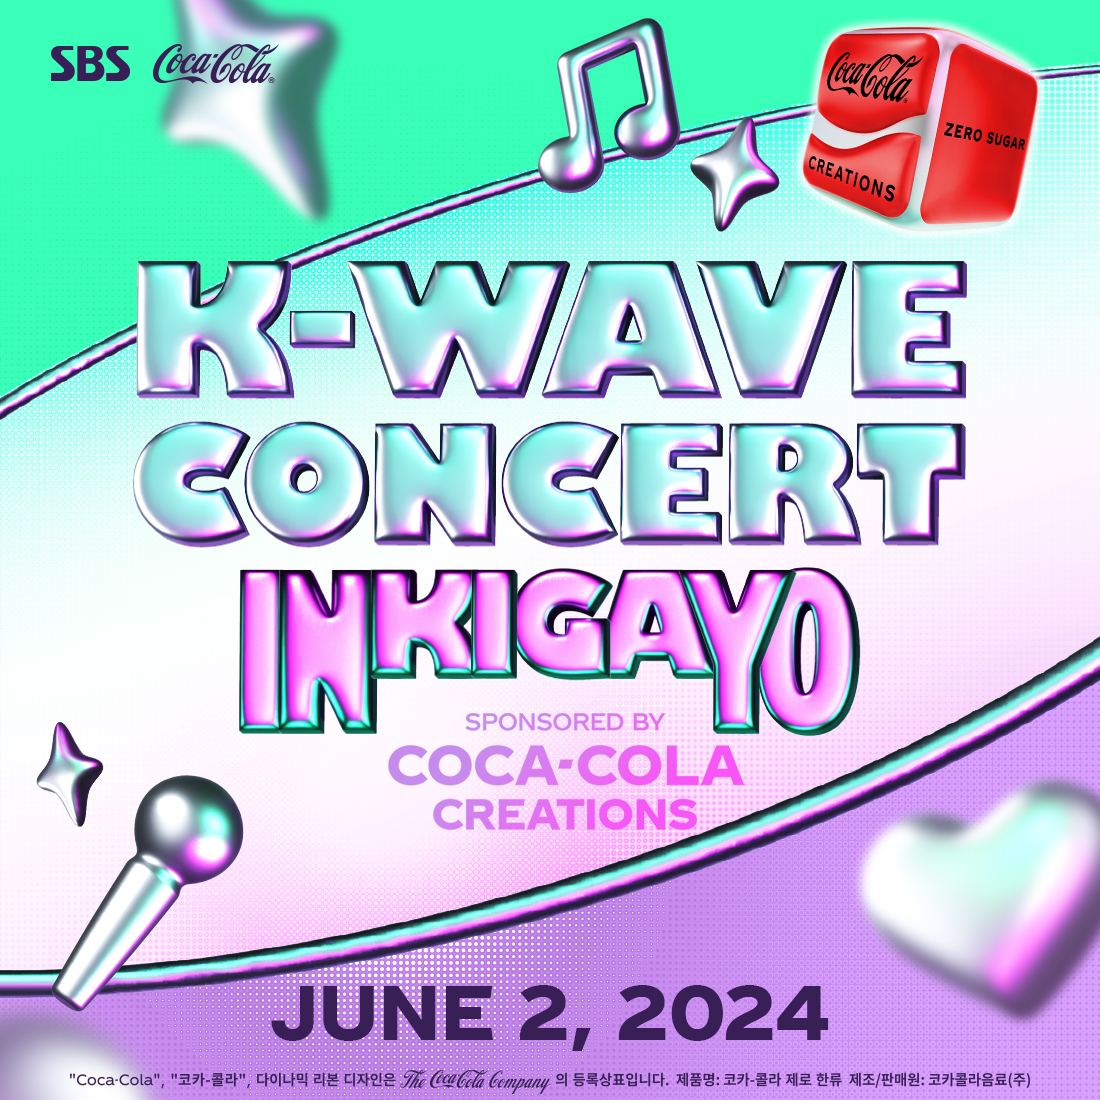 K-Wave 콘서트 인기가요를 대표하는 포스터로 가운데에는 K-Wave Concert Inkigayo presented by COCA-COLA CREATIONS가 삽입되어 있고 하단에는 진행 일시인 JUNE 2, 2024가 적혀있다.